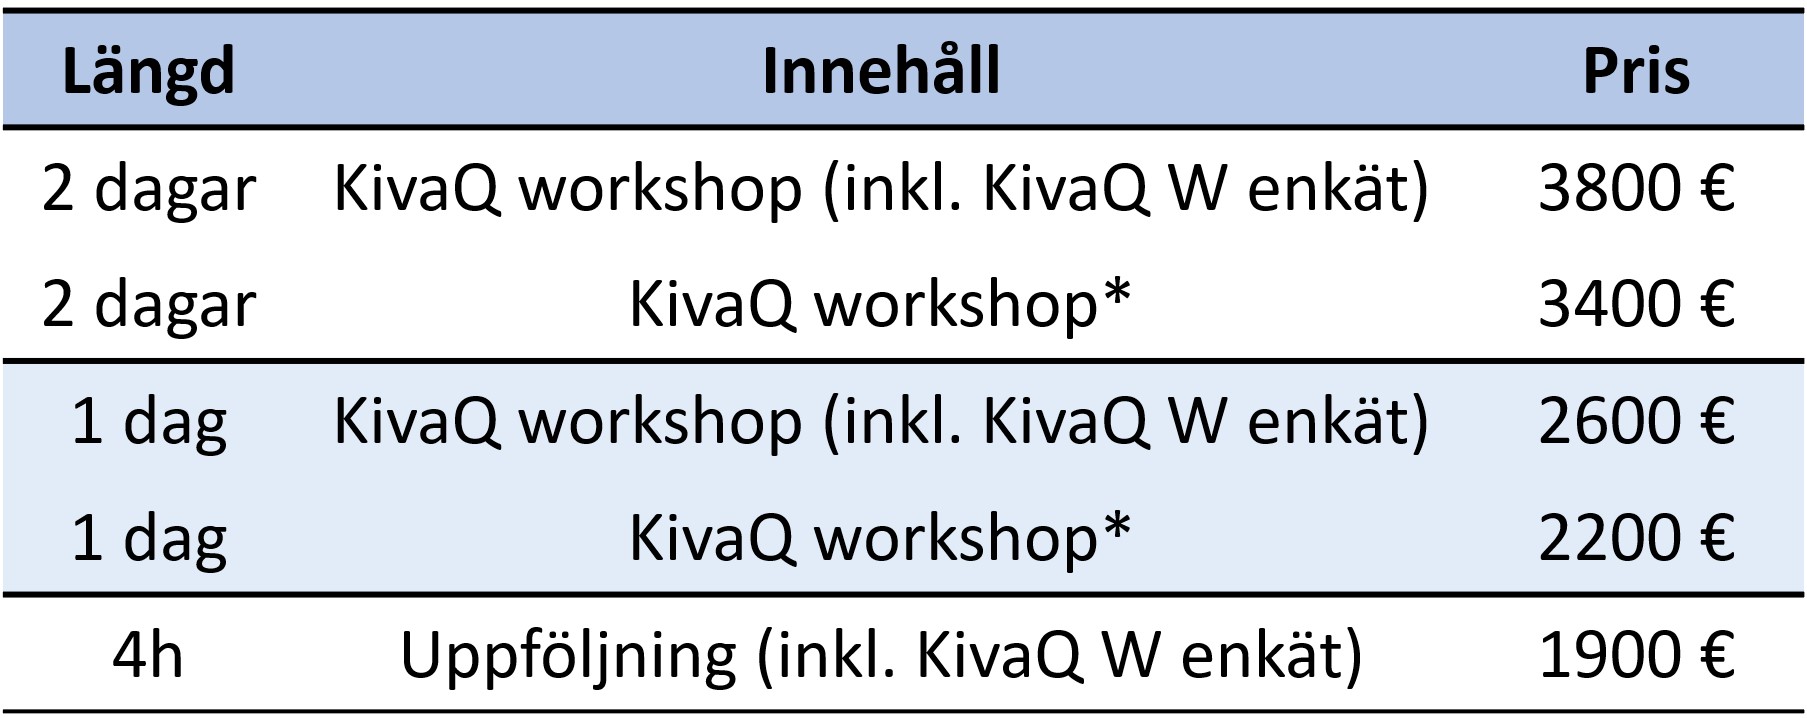 KivaQ workshop - prislista